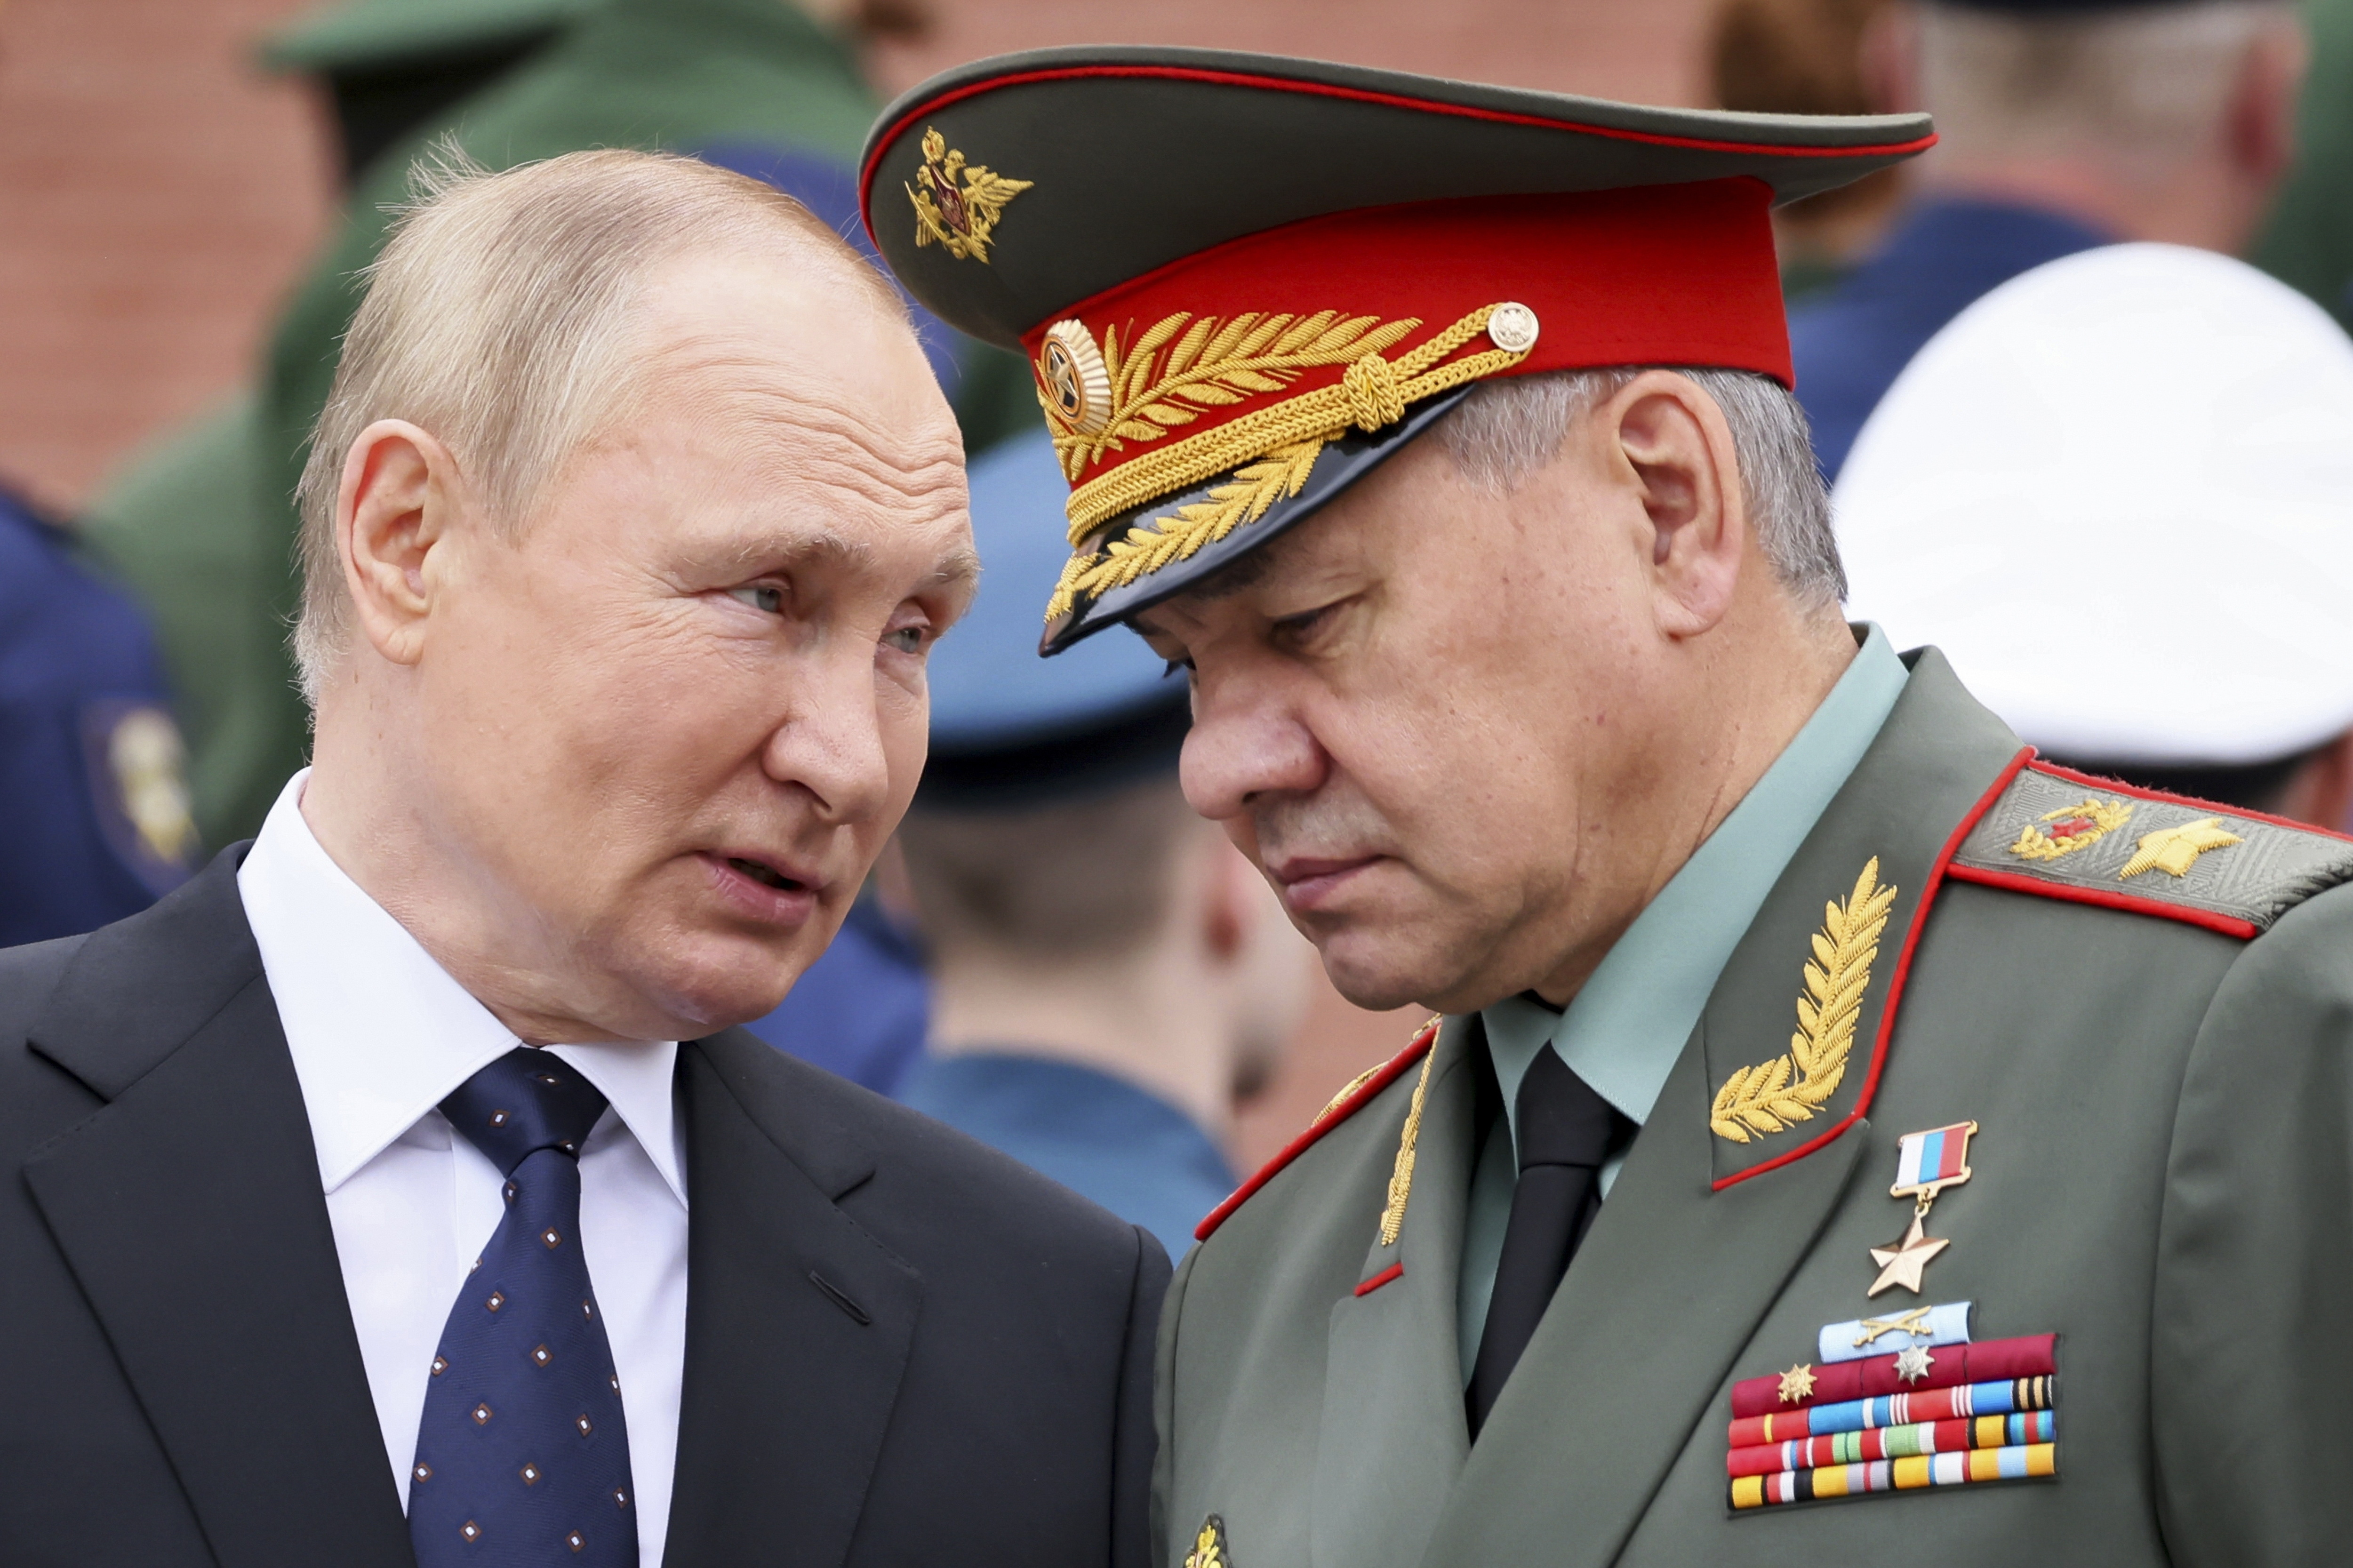 Vladimir Putin aduce din nou arsenalul nuclear in discuţie: Liderul de la Kremlin susţine că deşi armele nucleare reprezintă un factor de descurajare, riscul unui război în lume care să le împlice este în creştere